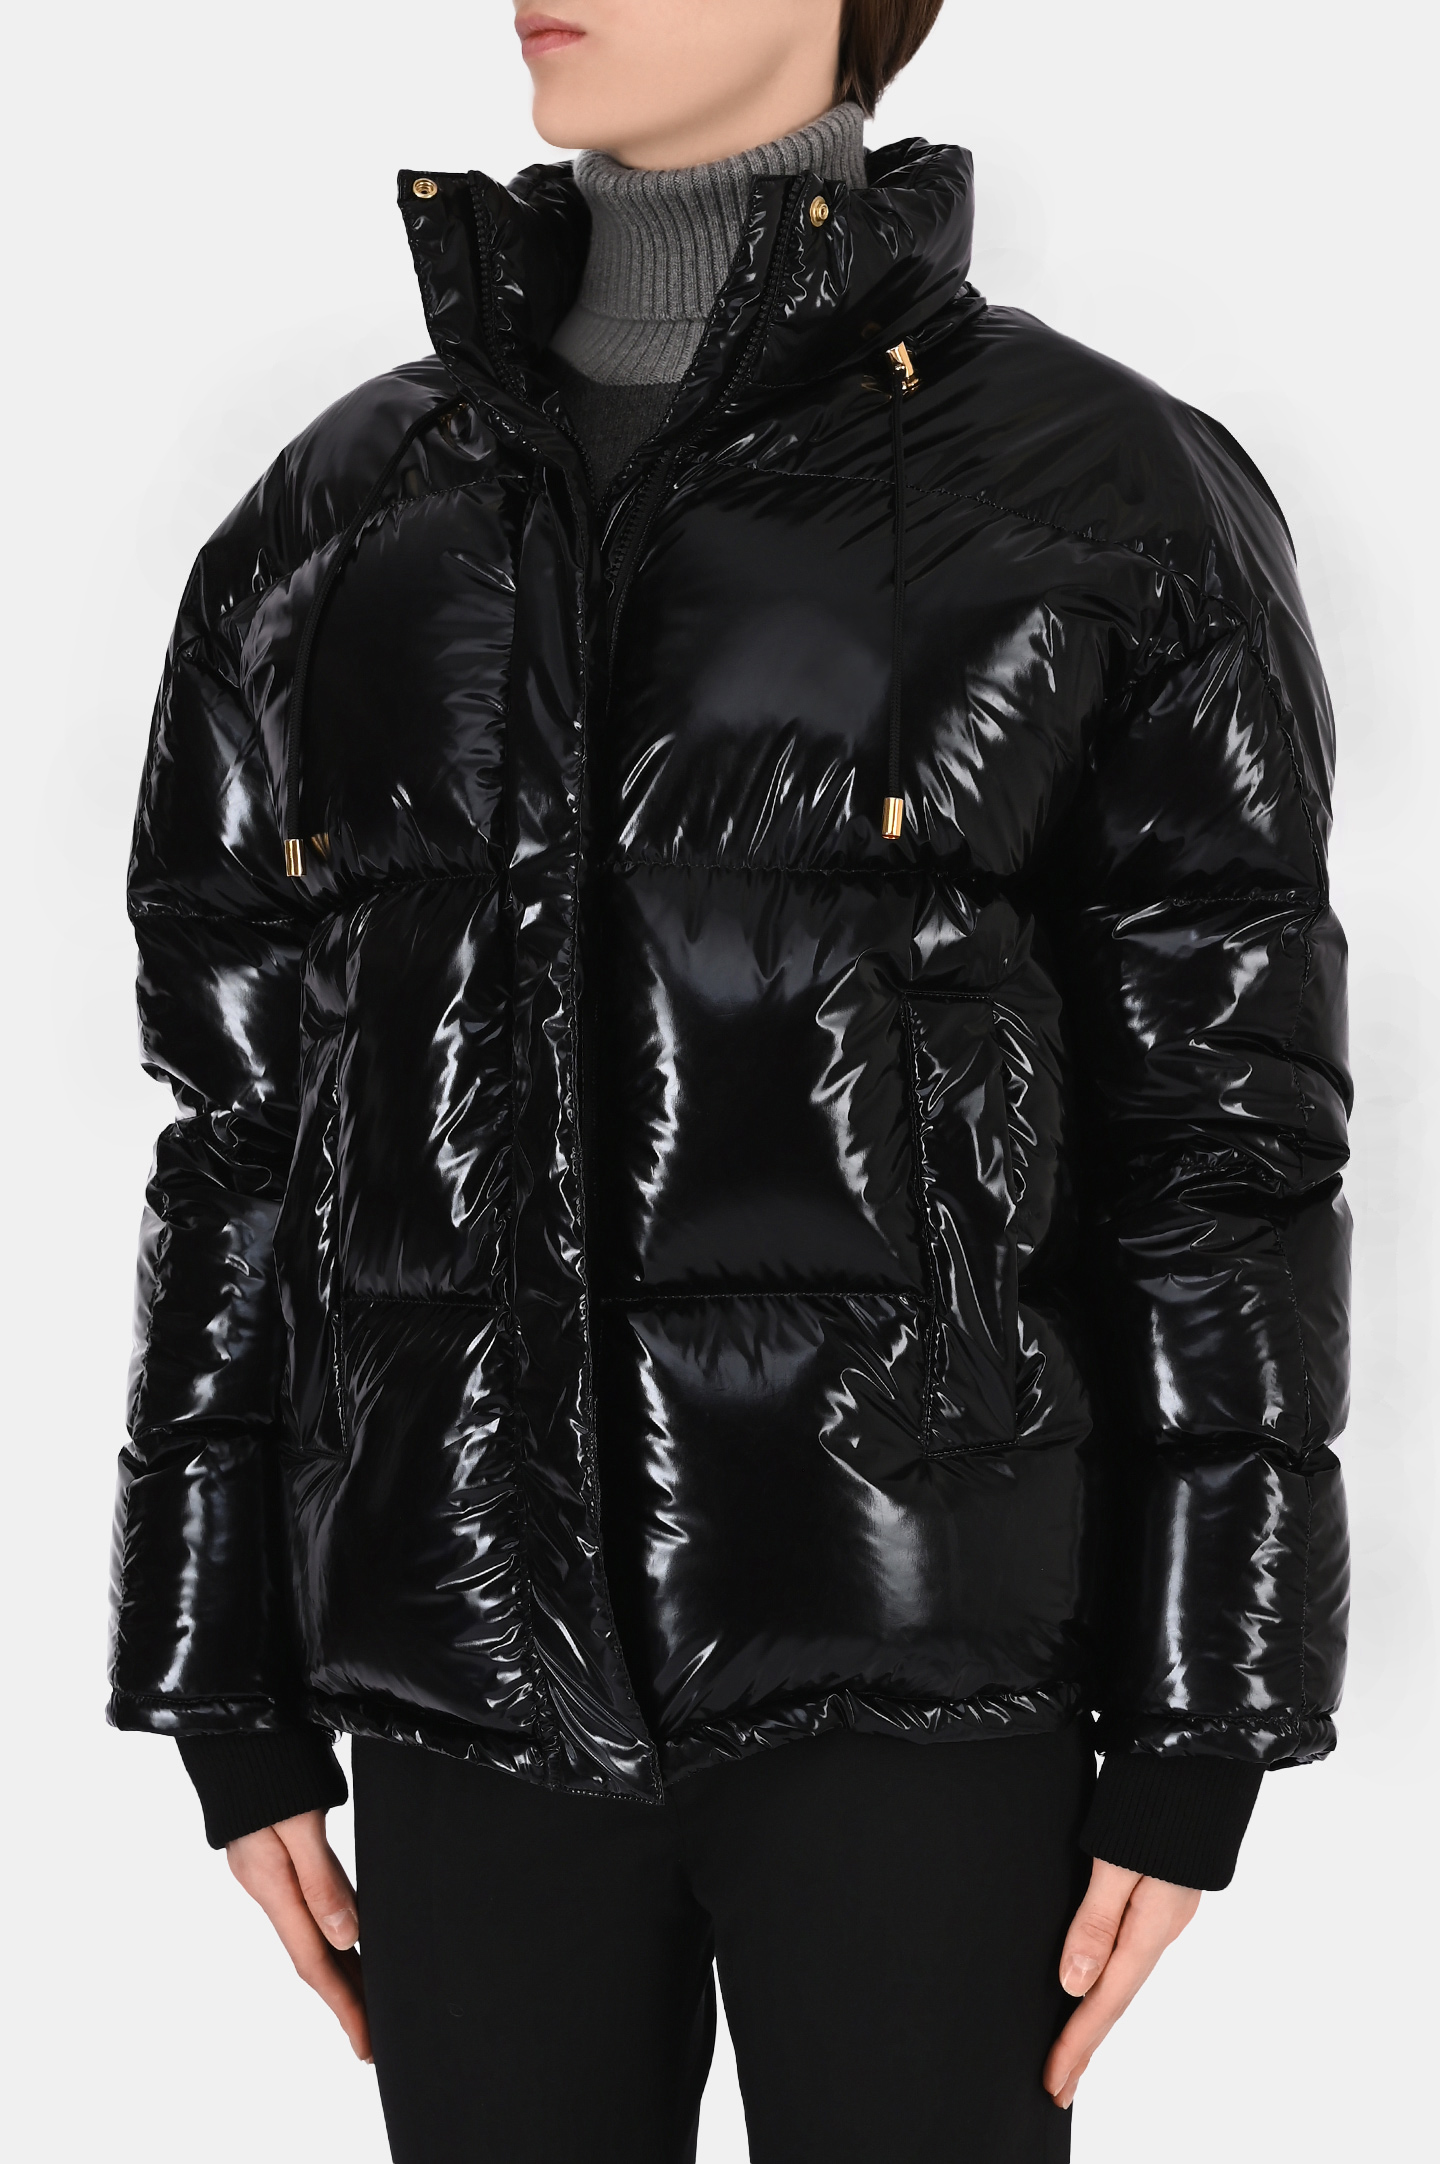 Куртка ALEXANDRE VAUTHIER 213COA1503, цвет: Черный, Женский